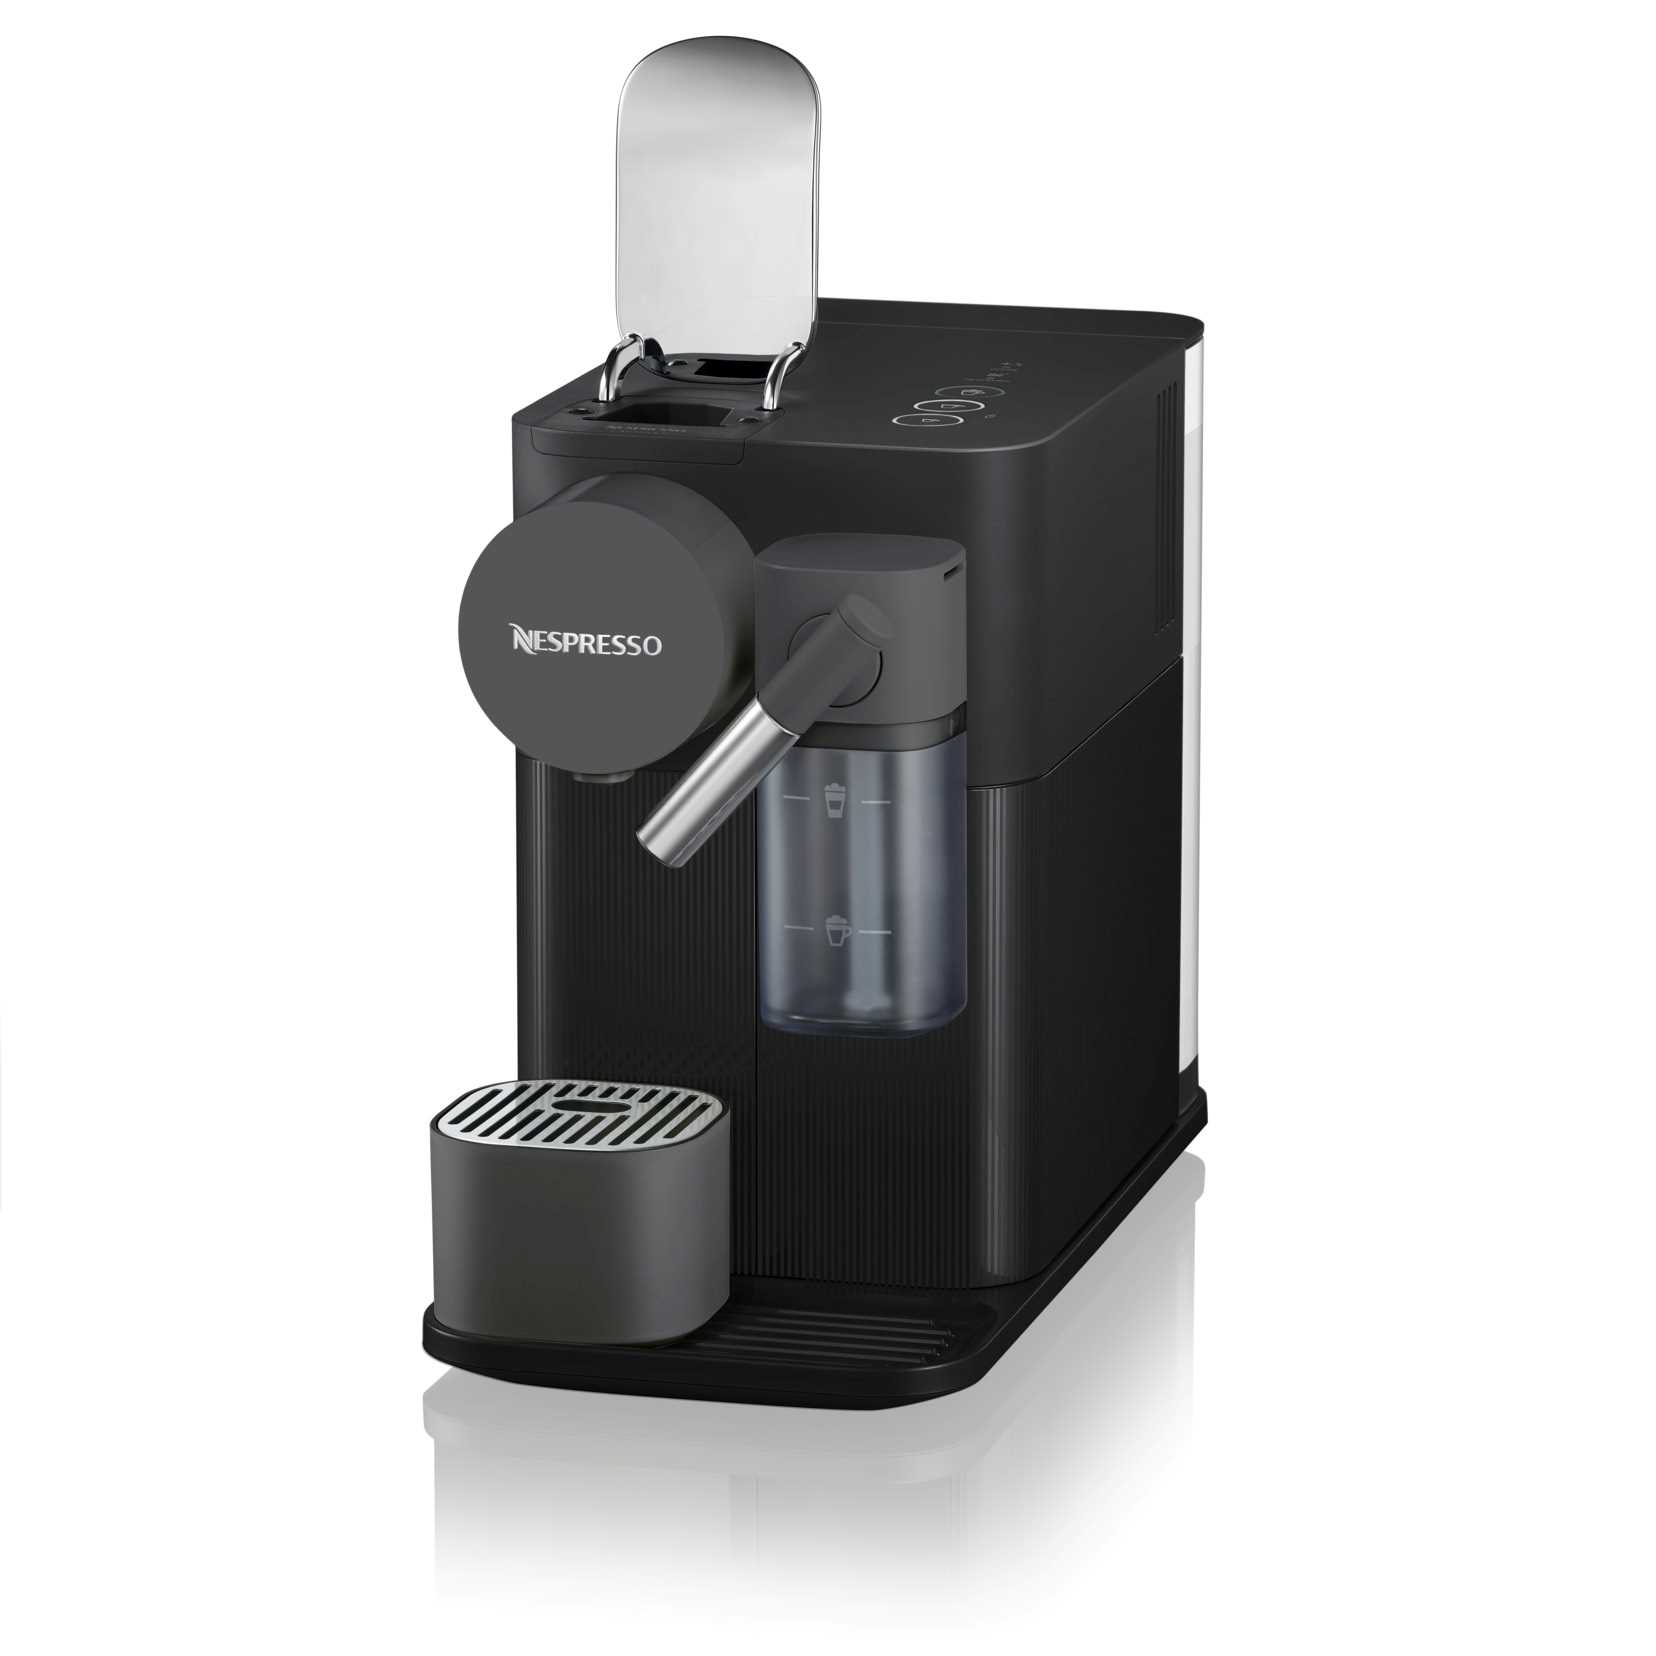 מכונת קפה Nespresso לטיסימה Lattissima One בצבע שחור דגם F111-IL-BK-NE - תמונה 3